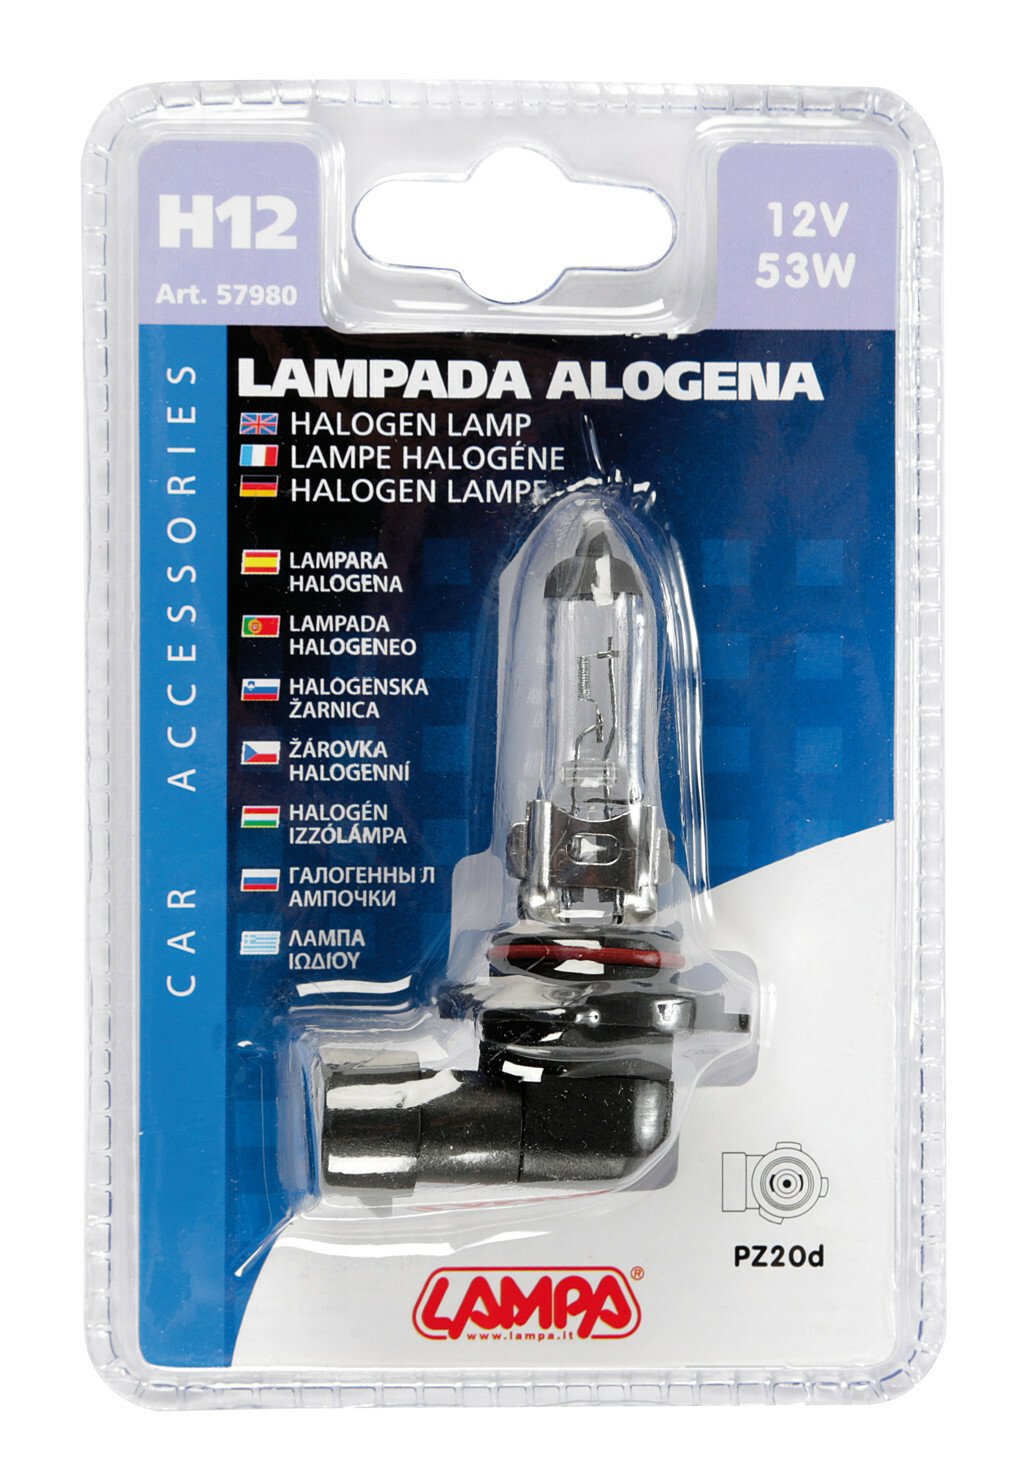 Lampa 12V classic bulb - H12 - 53W - PZ20d - 1pcs thumb